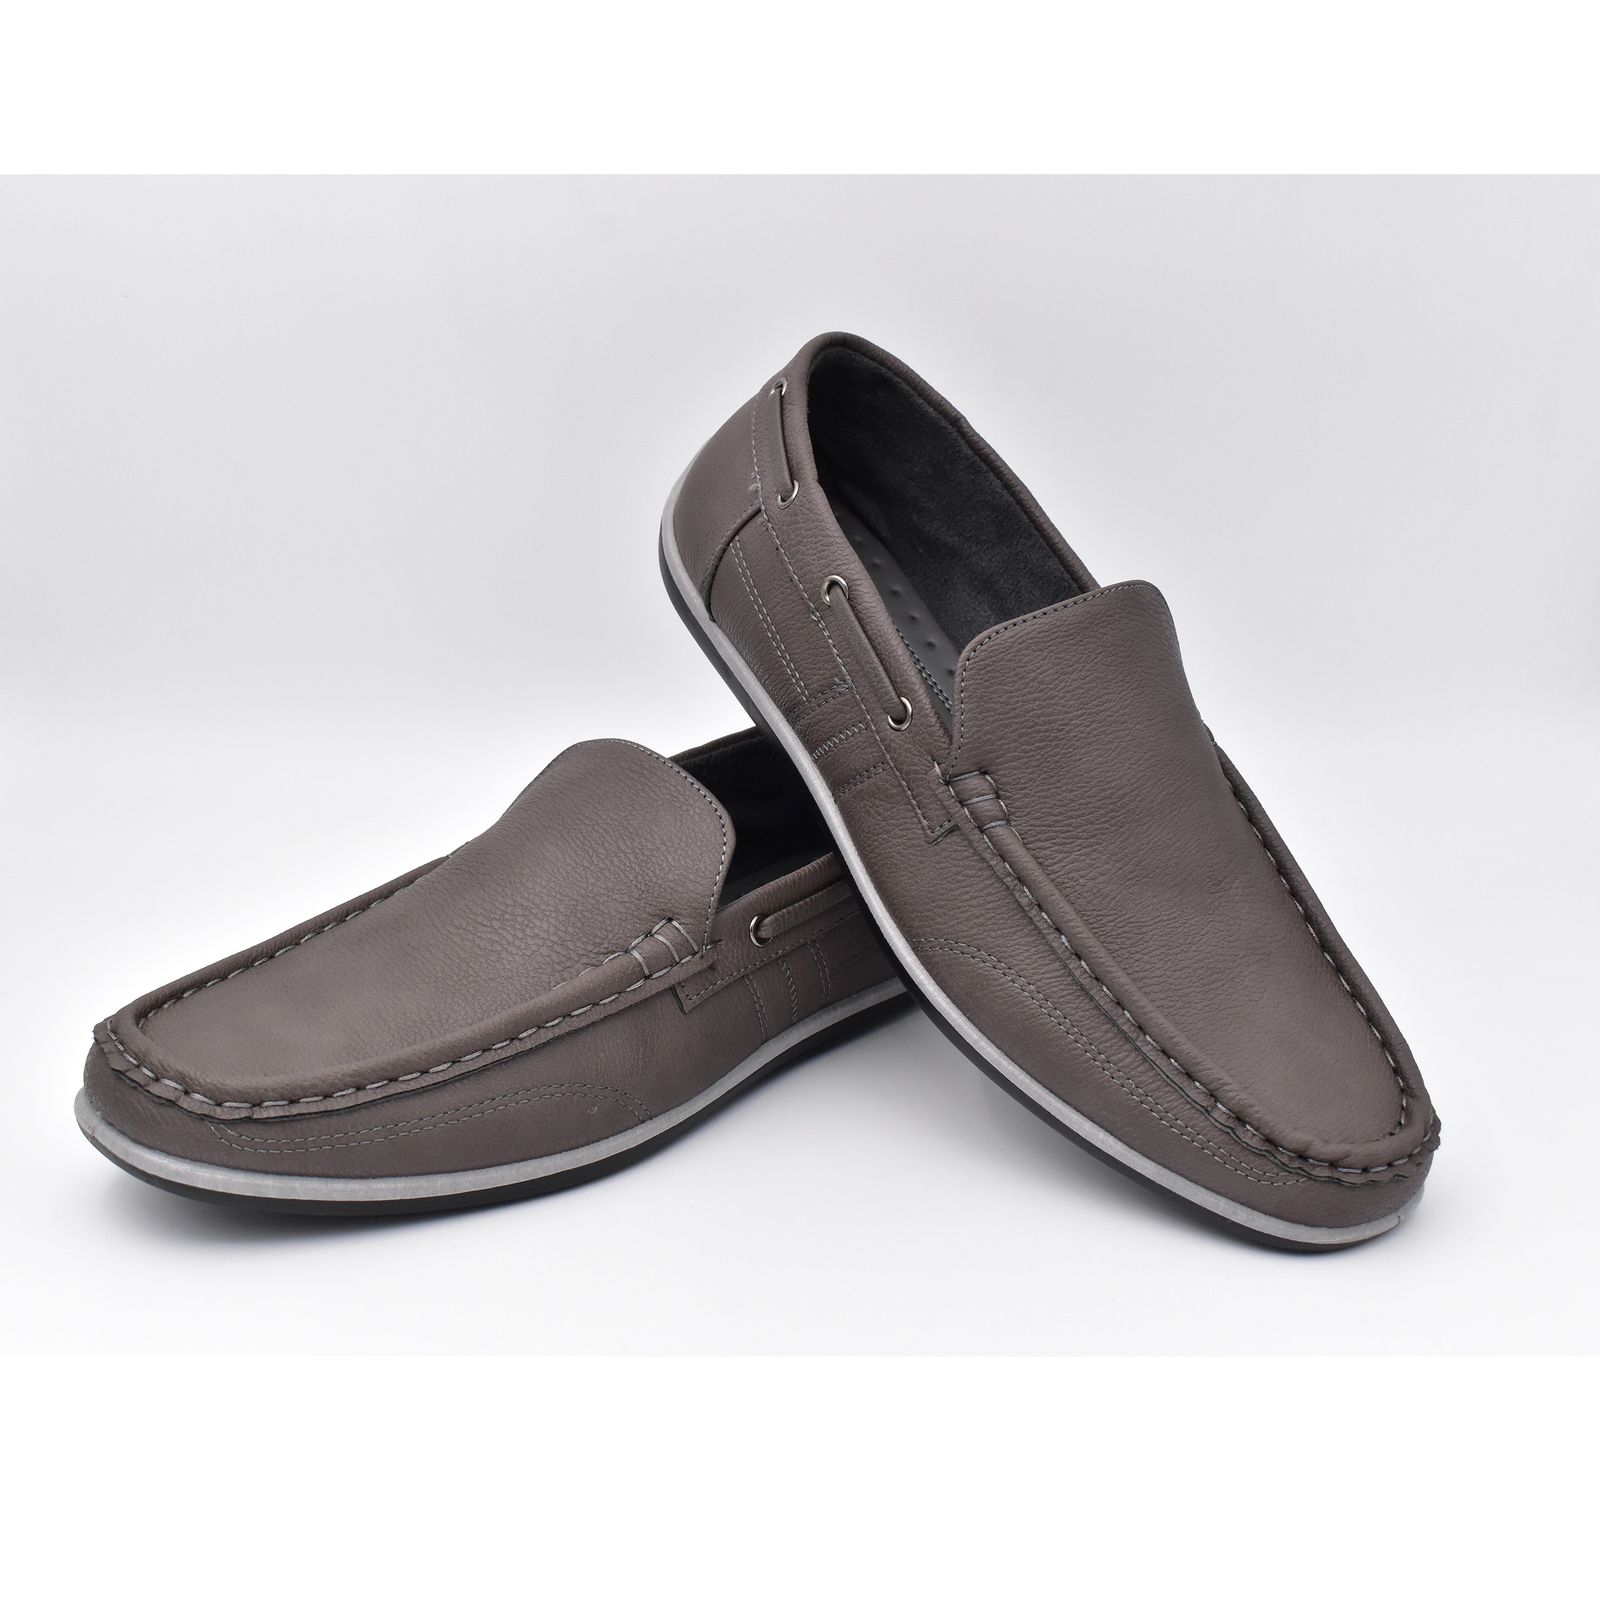 کفش روزمره مردانه پاما مدل KJ-056 کد G1539 -  - 7